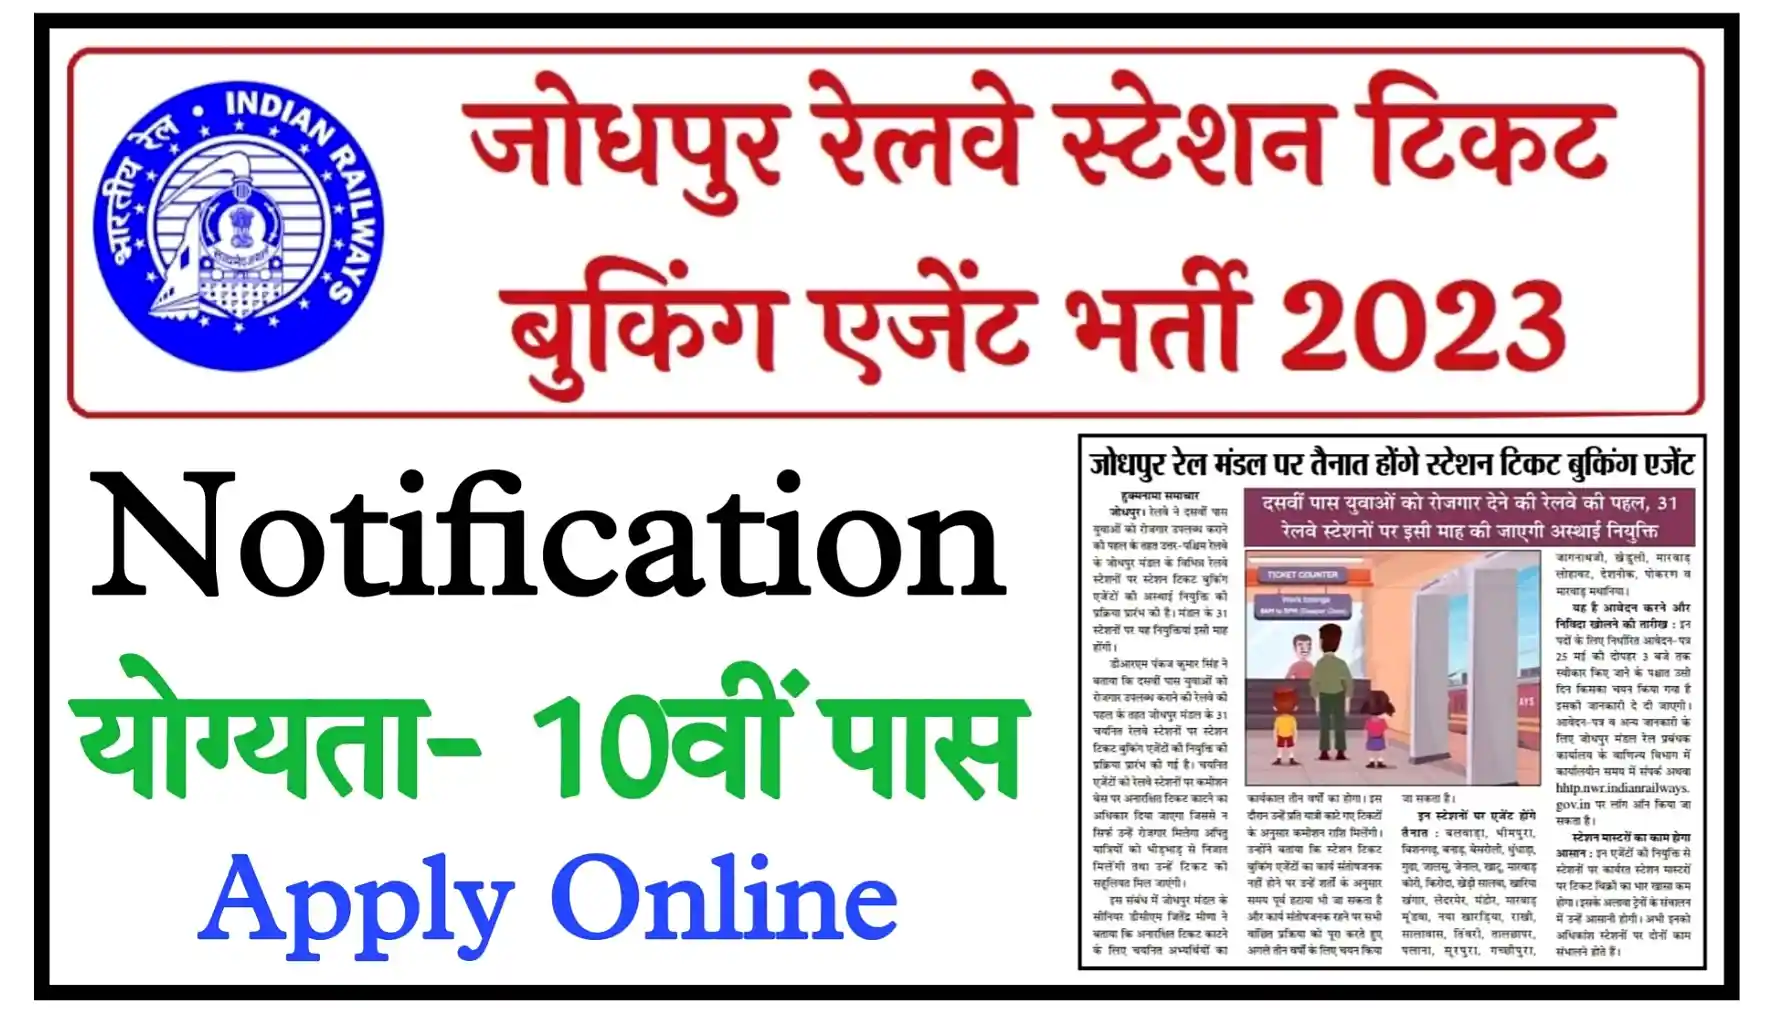 Jodhpur Railway Station Recruitment 2023 Apply Online जोधपुर रेलवे स्टेशन में टिकट बुकिंग एजेंट के पदों पर निकली भर्ती